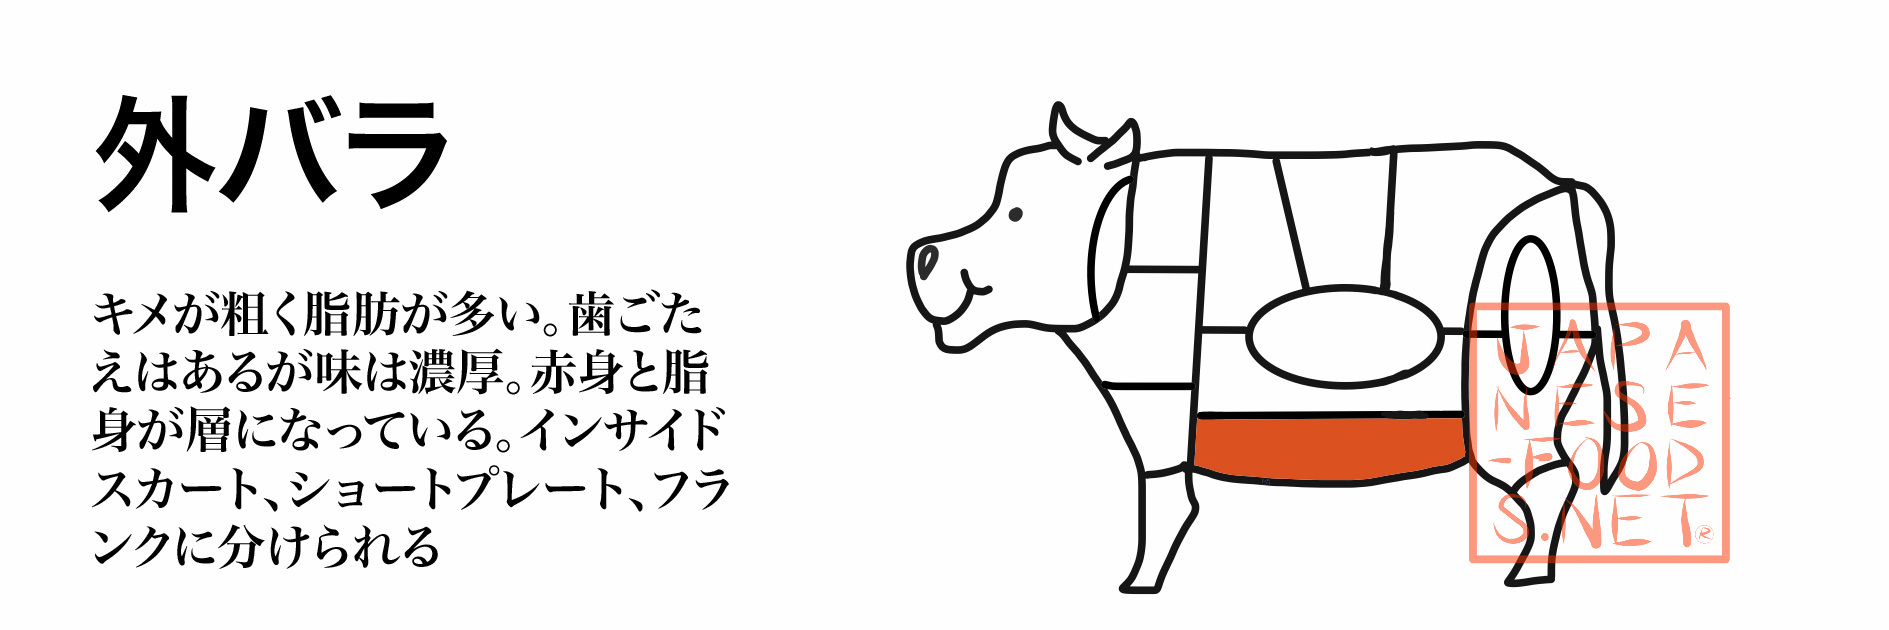 牛肉 外バラ Short Plate 細かい部位 特徴 栄養素japanese Food Net